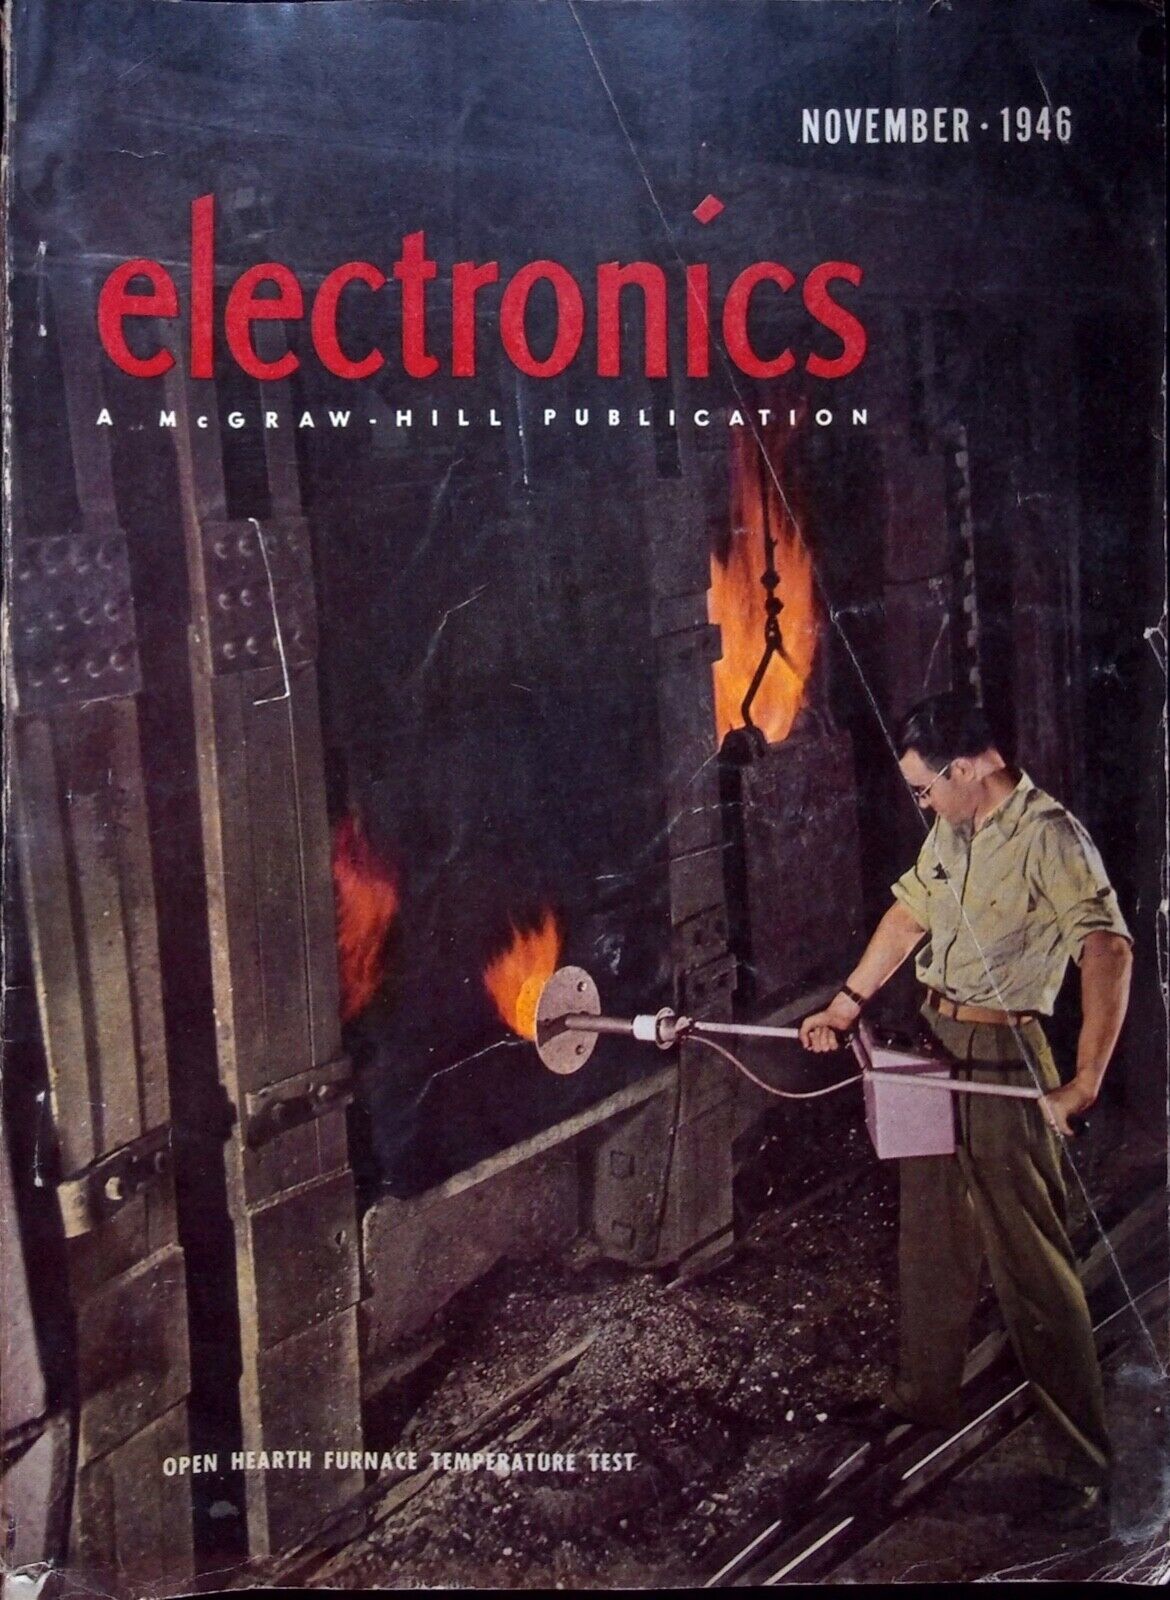 FLAME RADIATION MEASURING INSTRUMENT - ELECTRONICS MAGAZINE, NOVEMBER 1946